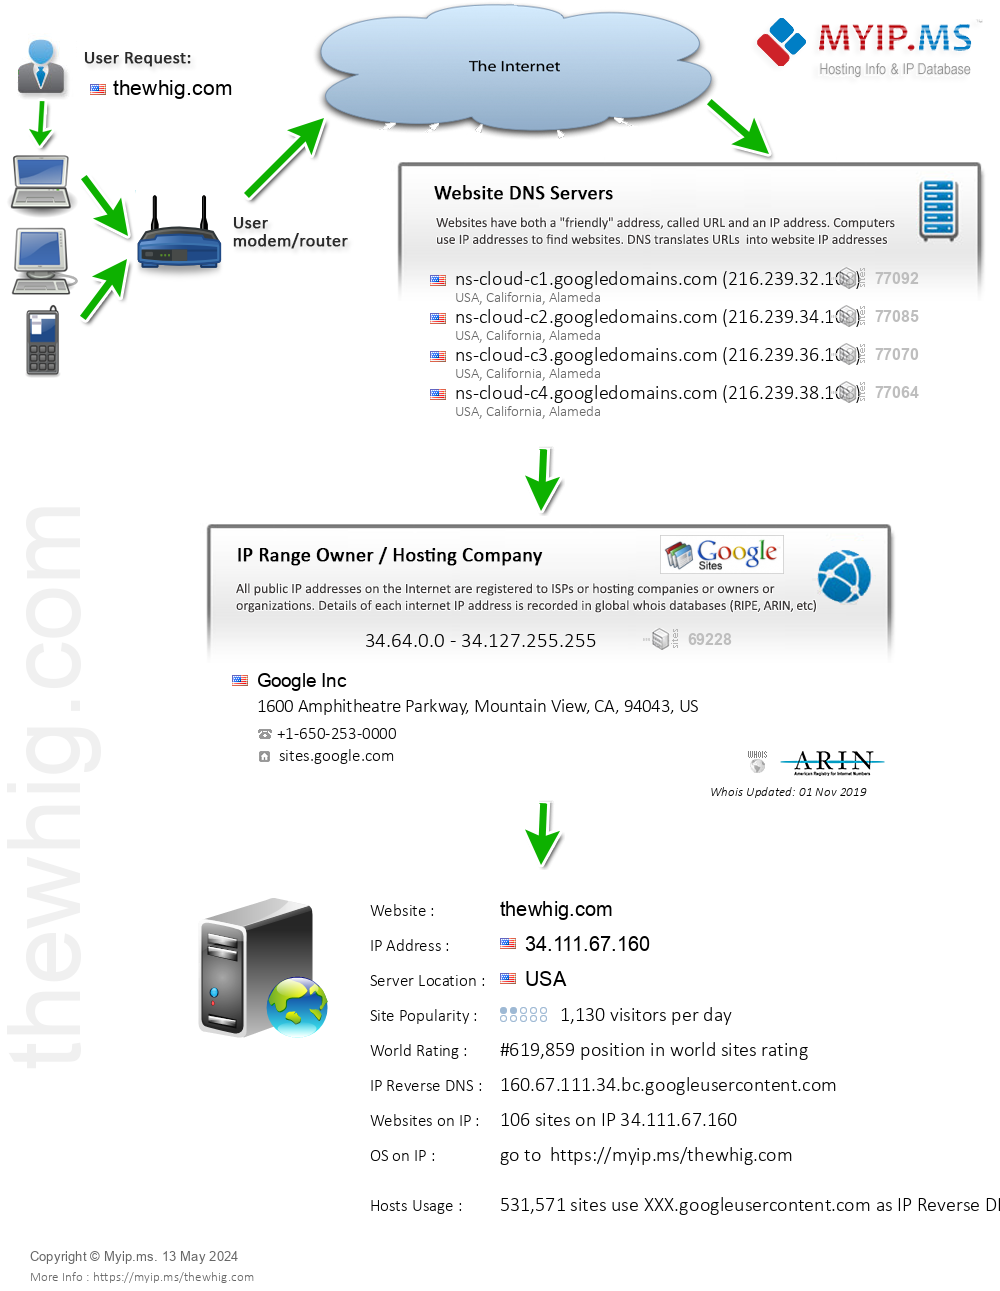 Thewhig.com - Website Hosting Visual IP Diagram